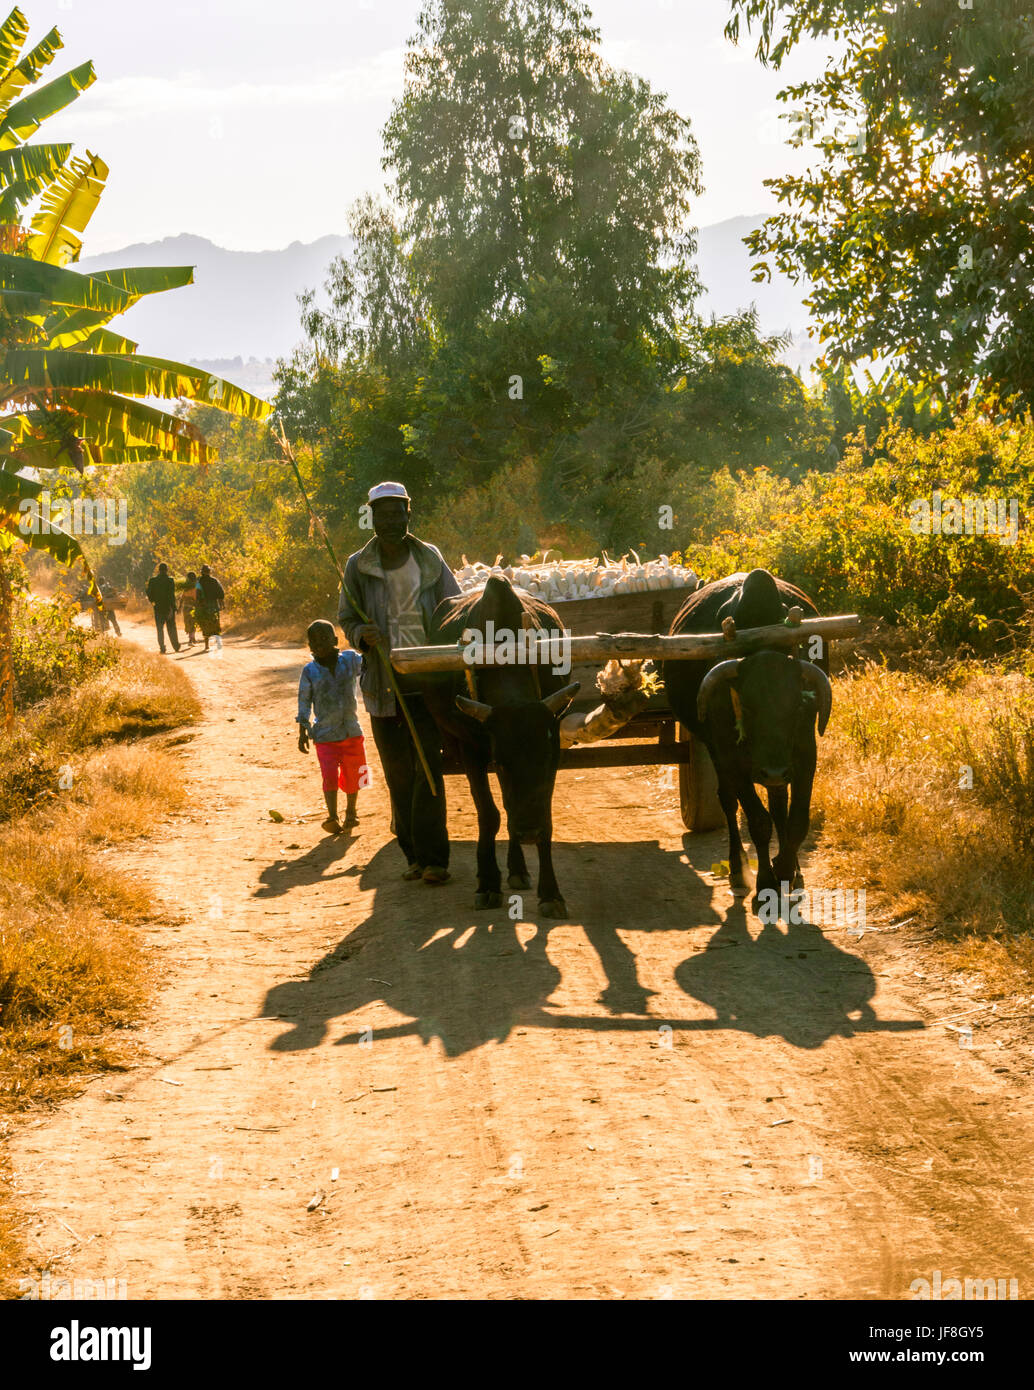 Malawische Mann Spaziergänge neben Ochsenkarren mit Maiskolben aus seinem Gebiet auf Feldweg durch ländliche Dorf zeigt traditionell gebaut Schlamm Gehäuse Stockfoto